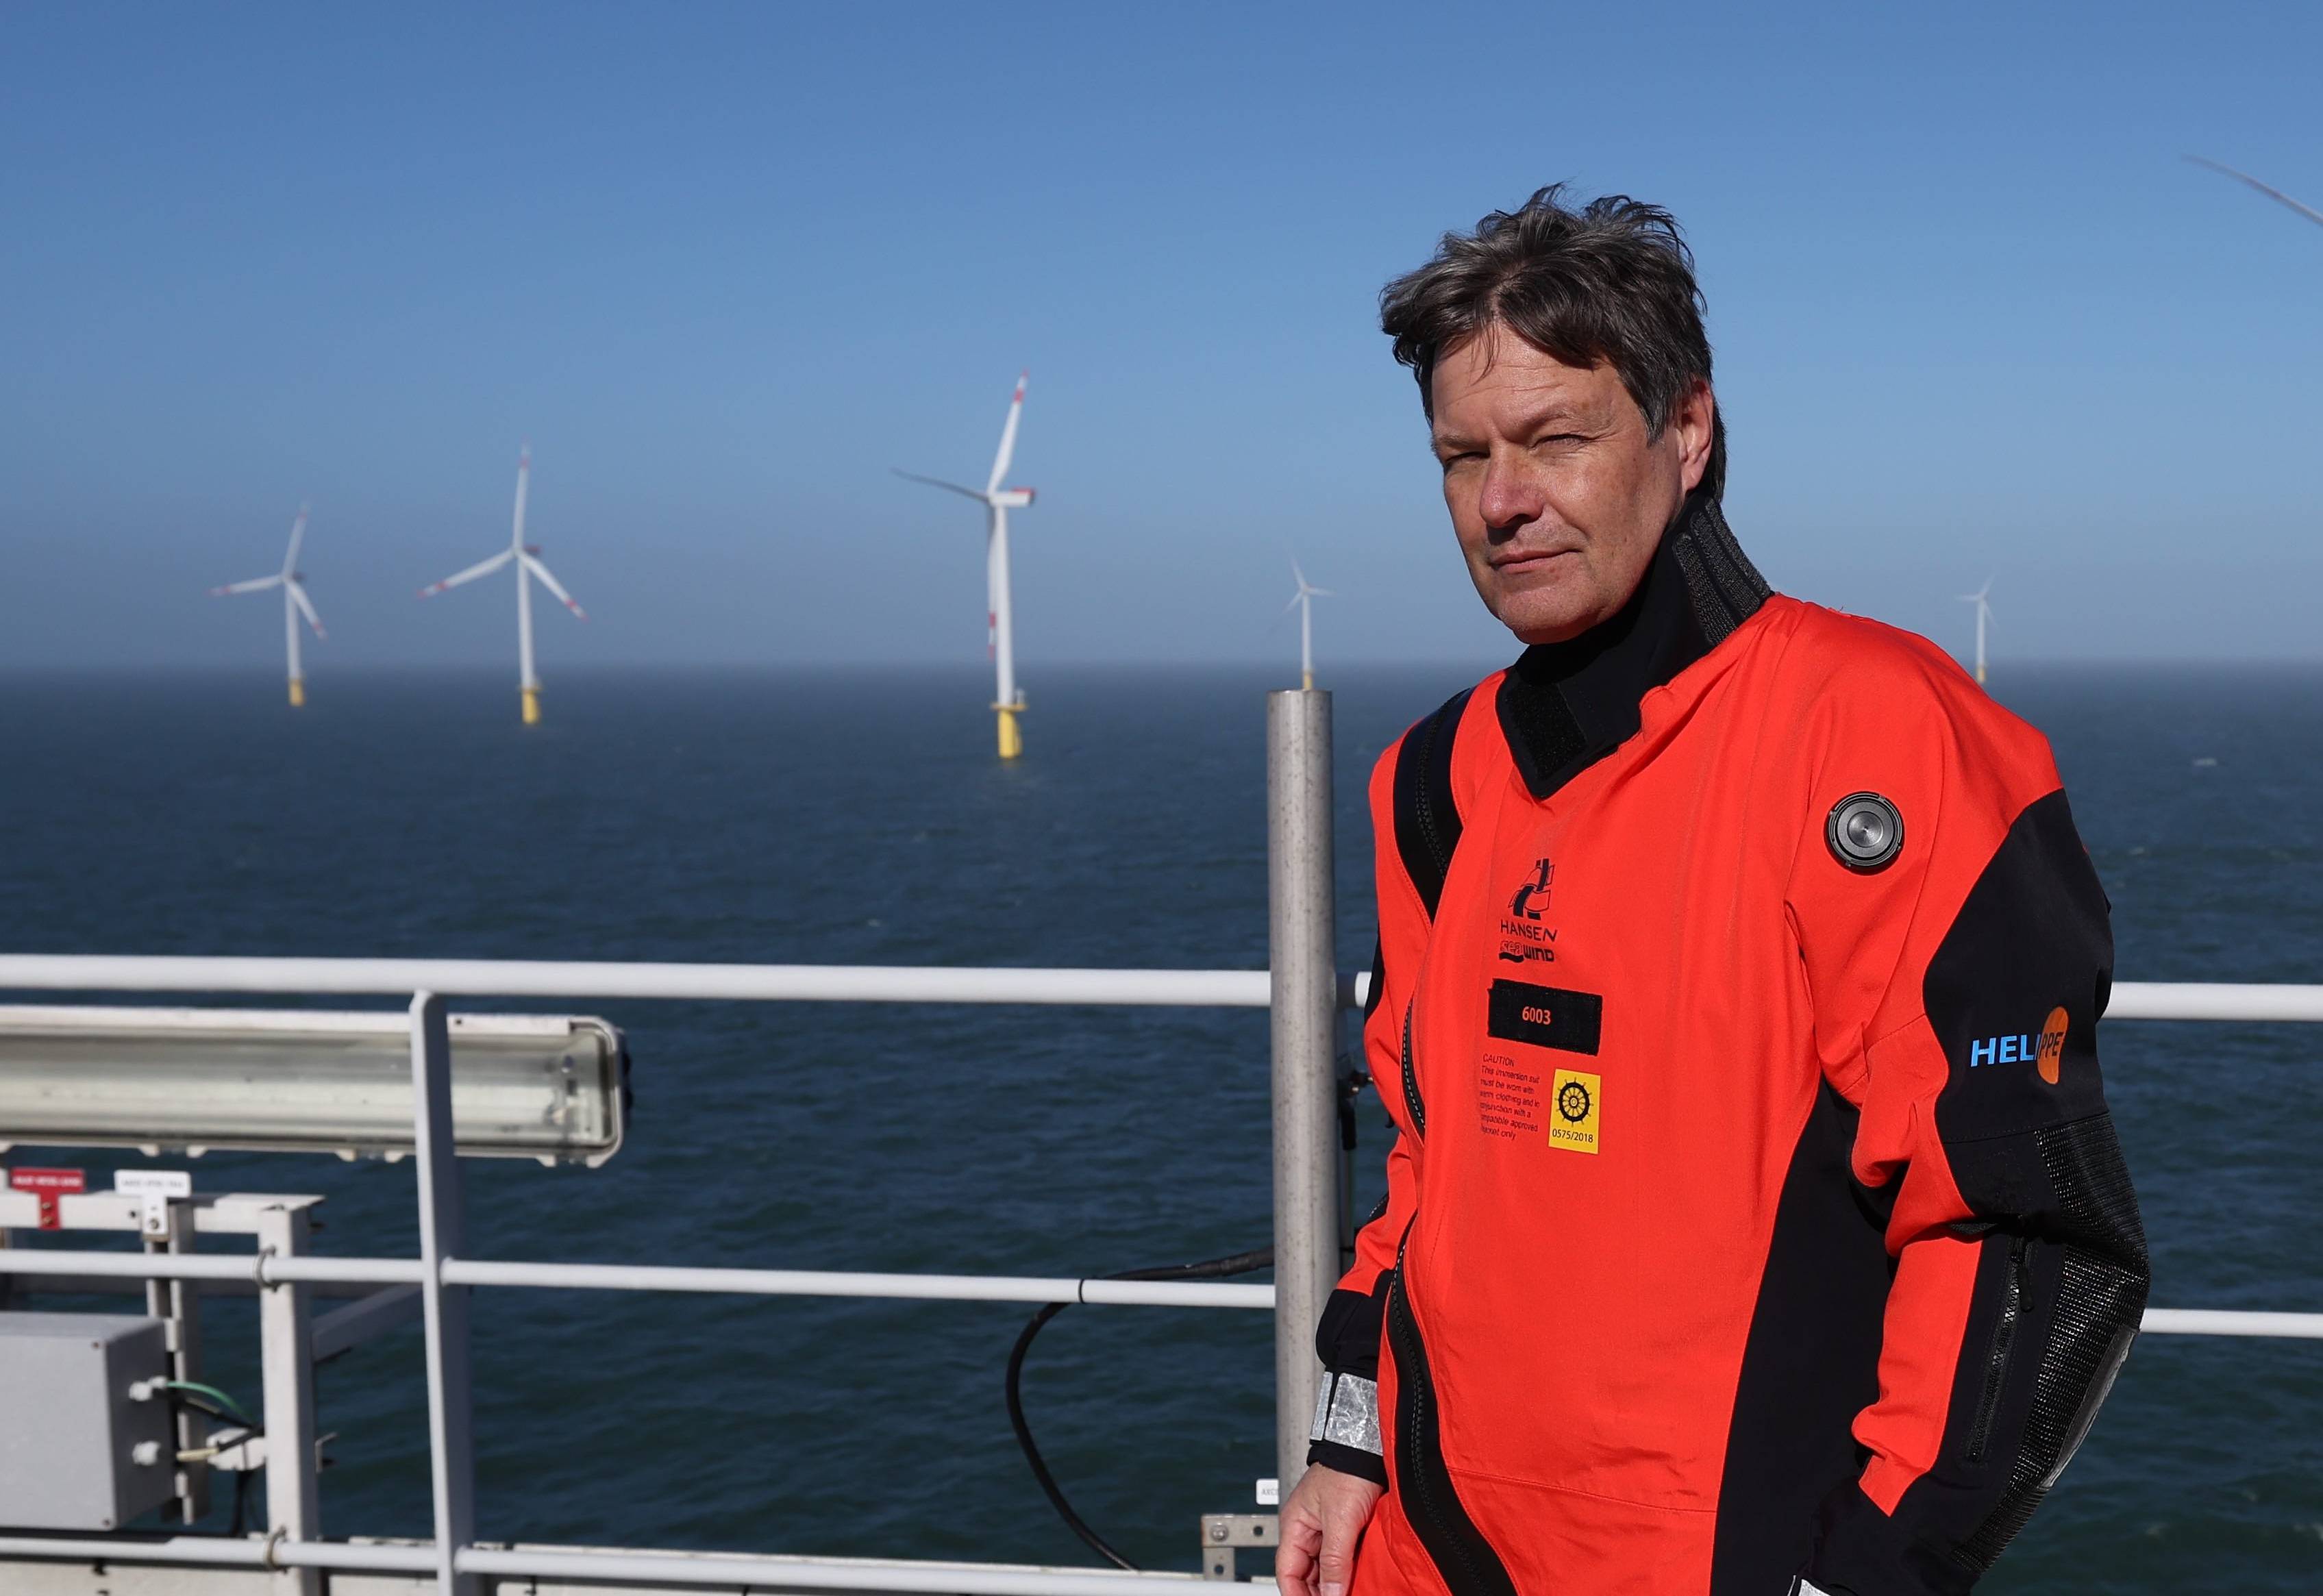 Robert Habeck w czerwonym kombinezonie stoi na tle elektrowni wiatrowych, zbudowanych w morzu.